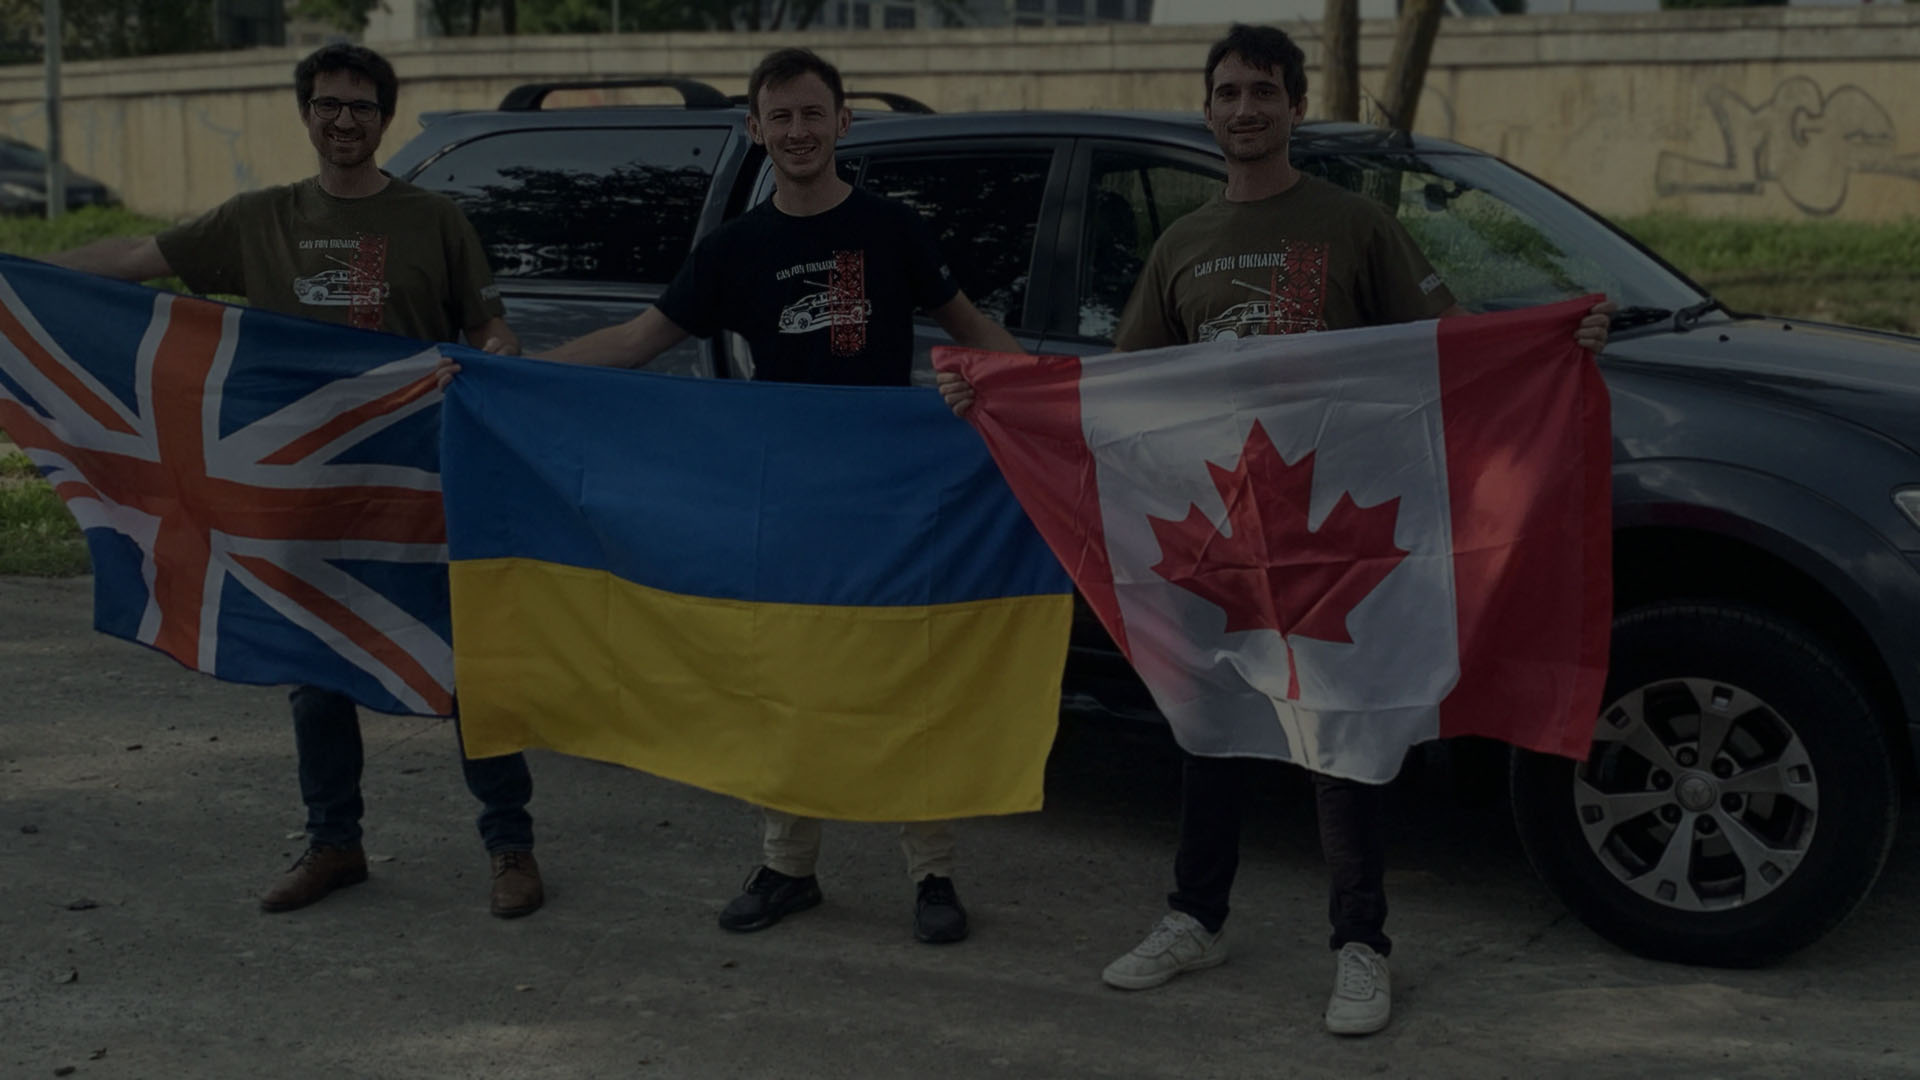 Dos hermanos y Ivan Oleksii están frente a dos camionetas SUV pickup donadas sosteniendo banderas británicas, ucranianas y canadienses.